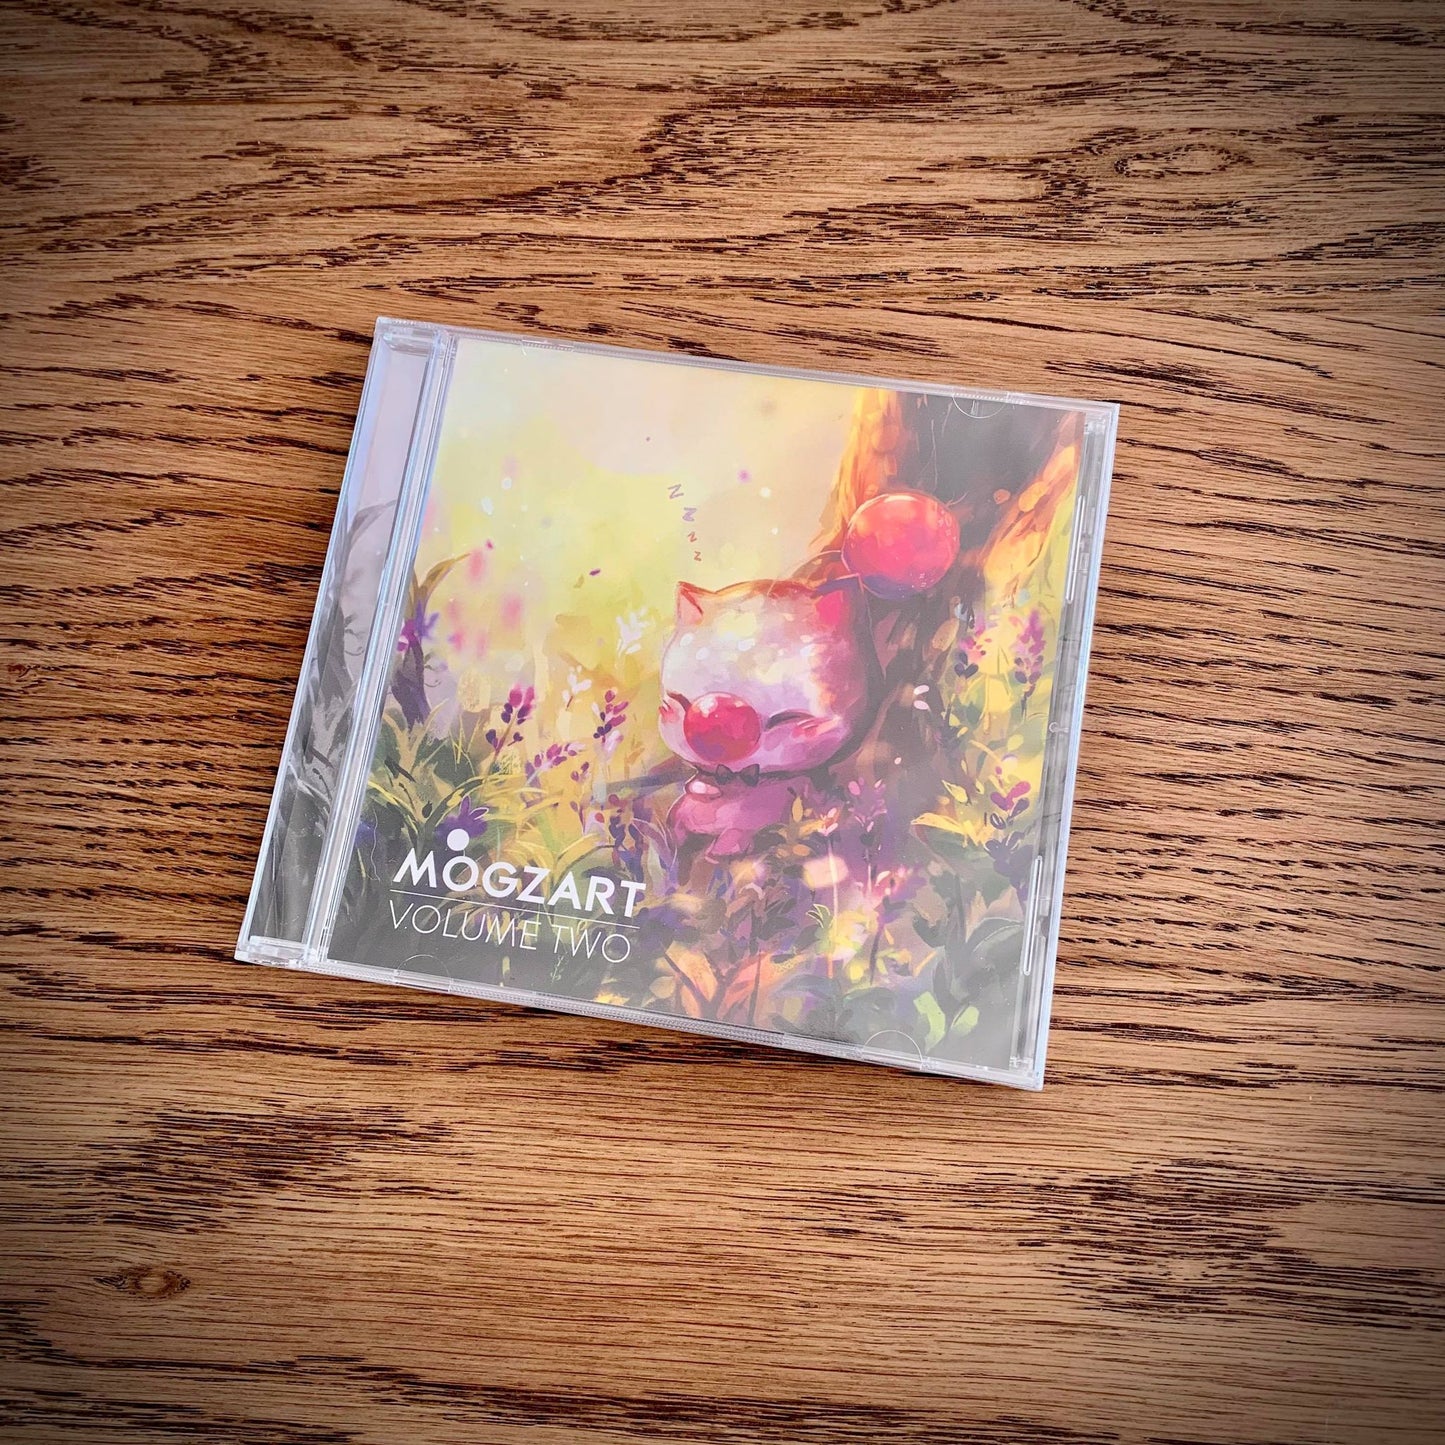 Mogzart Vol. 2 CD